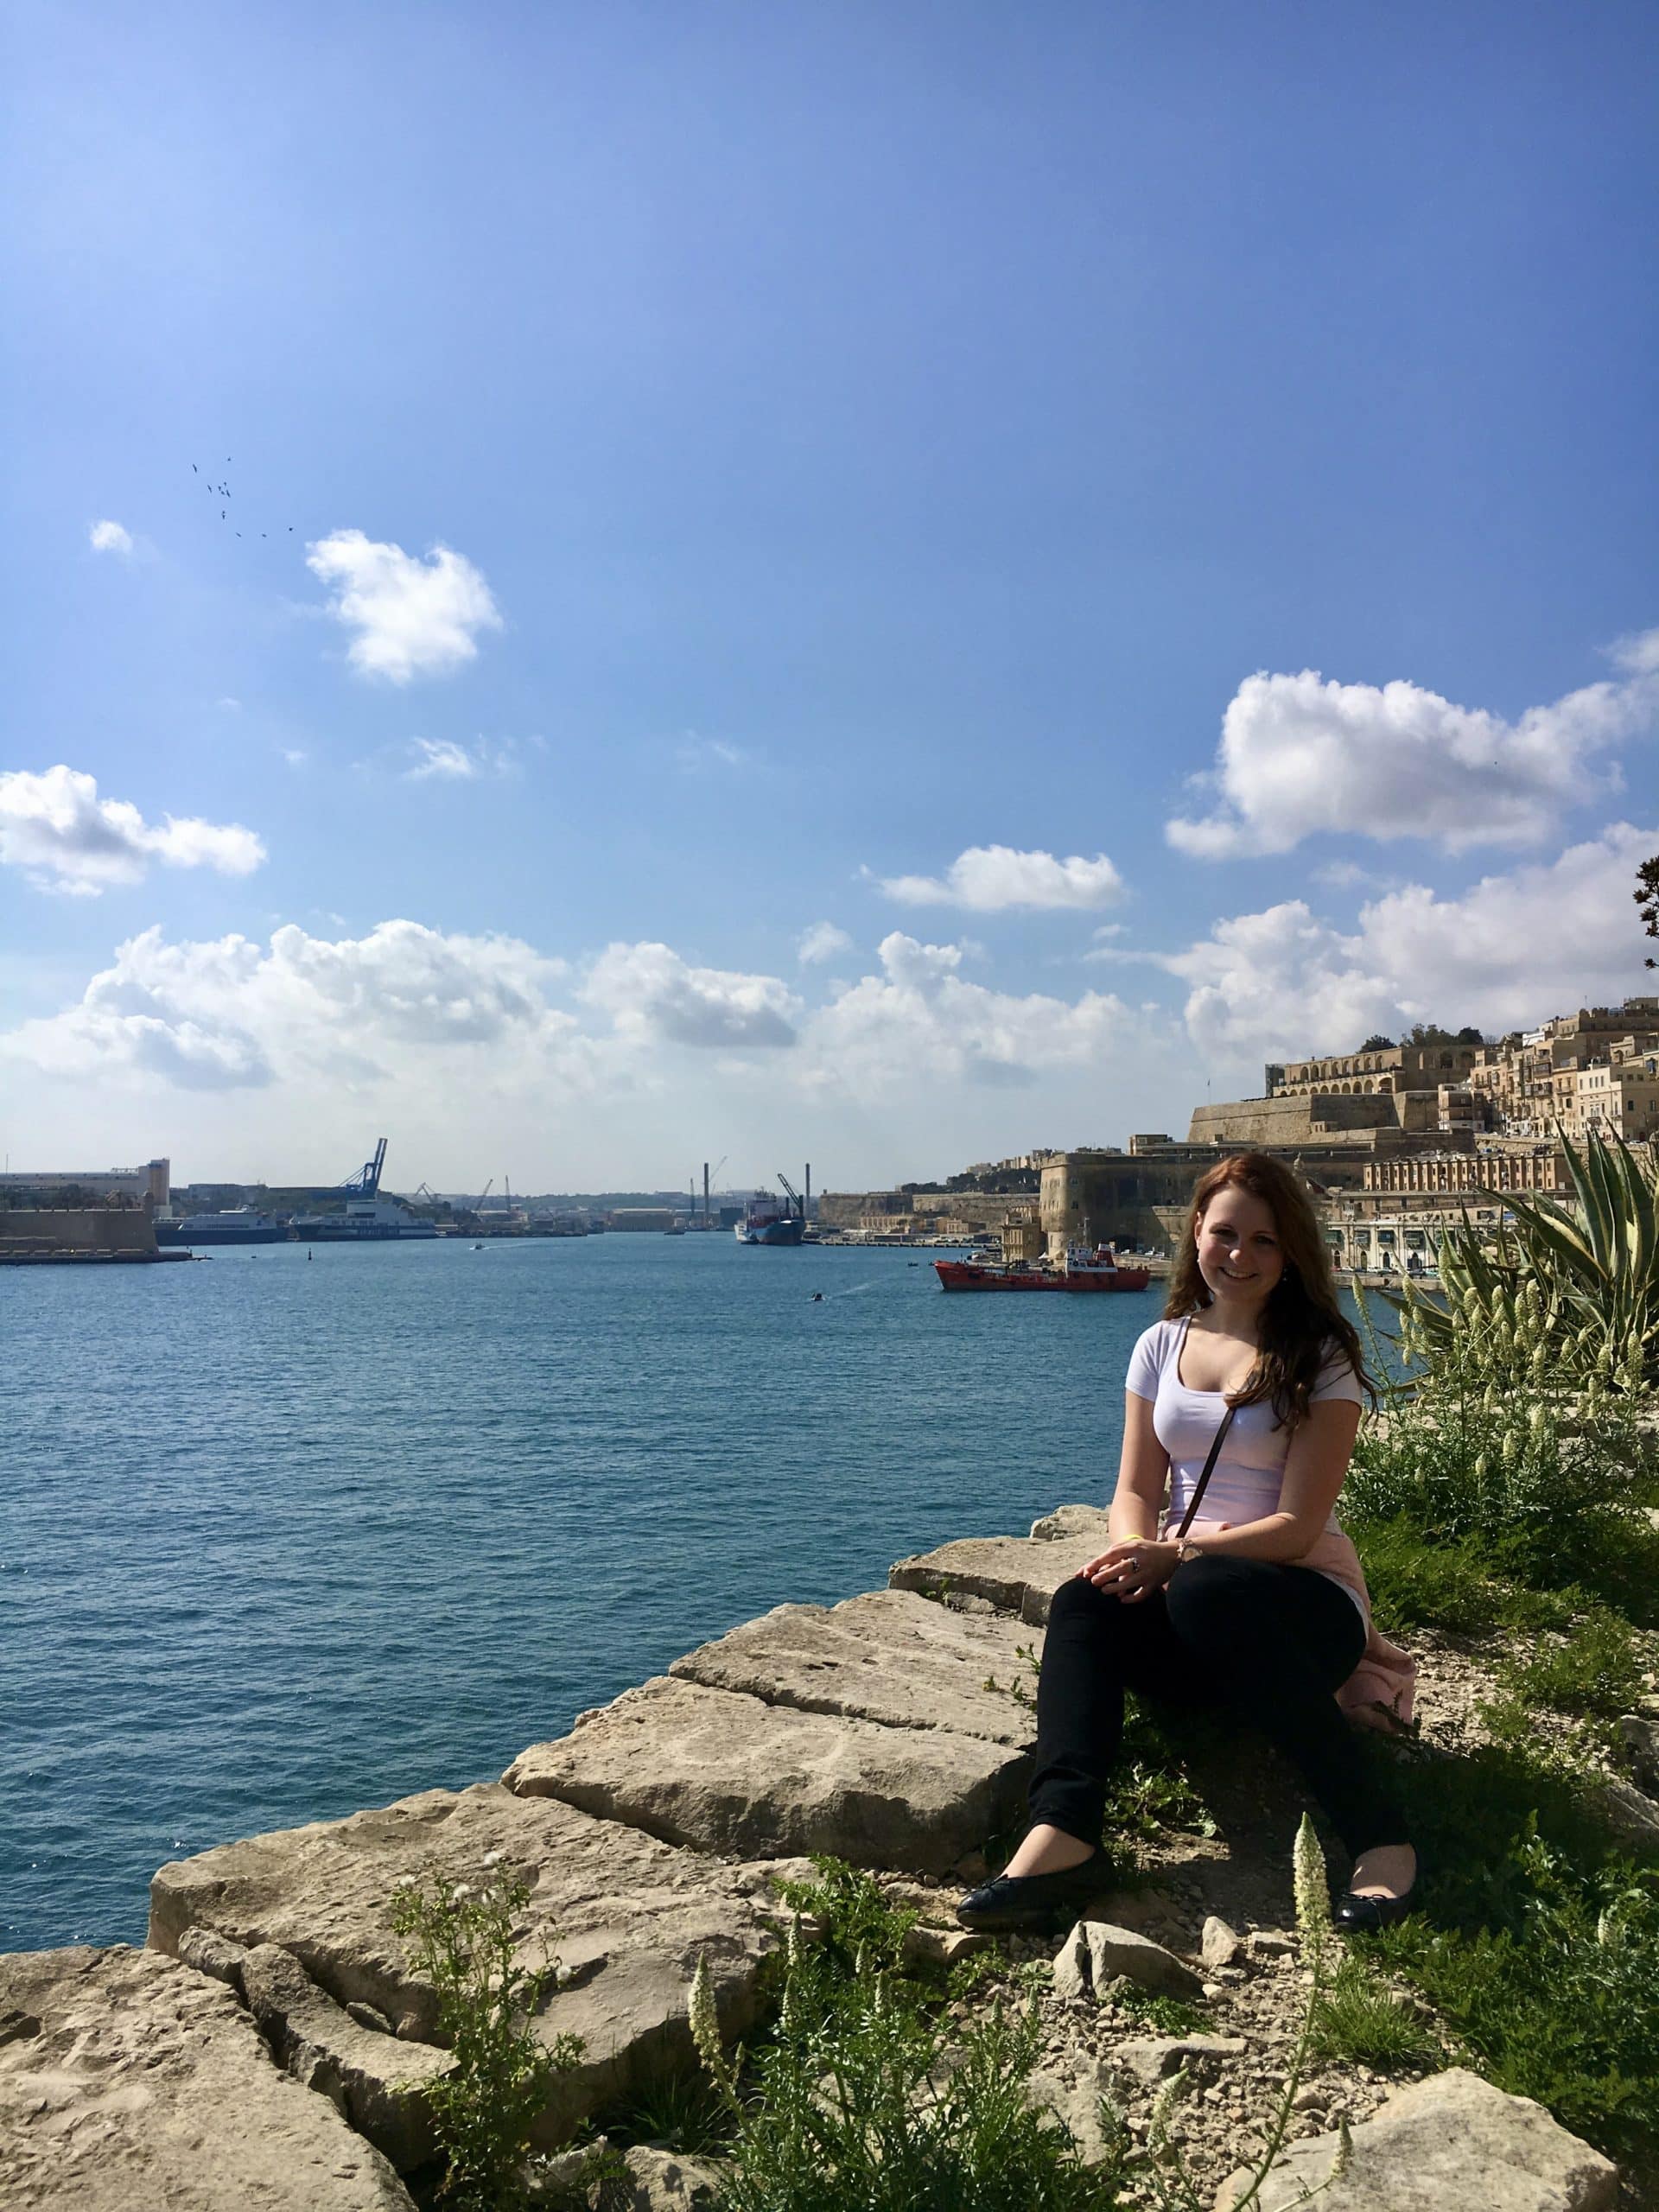 Malta – getting summer feelings in winter